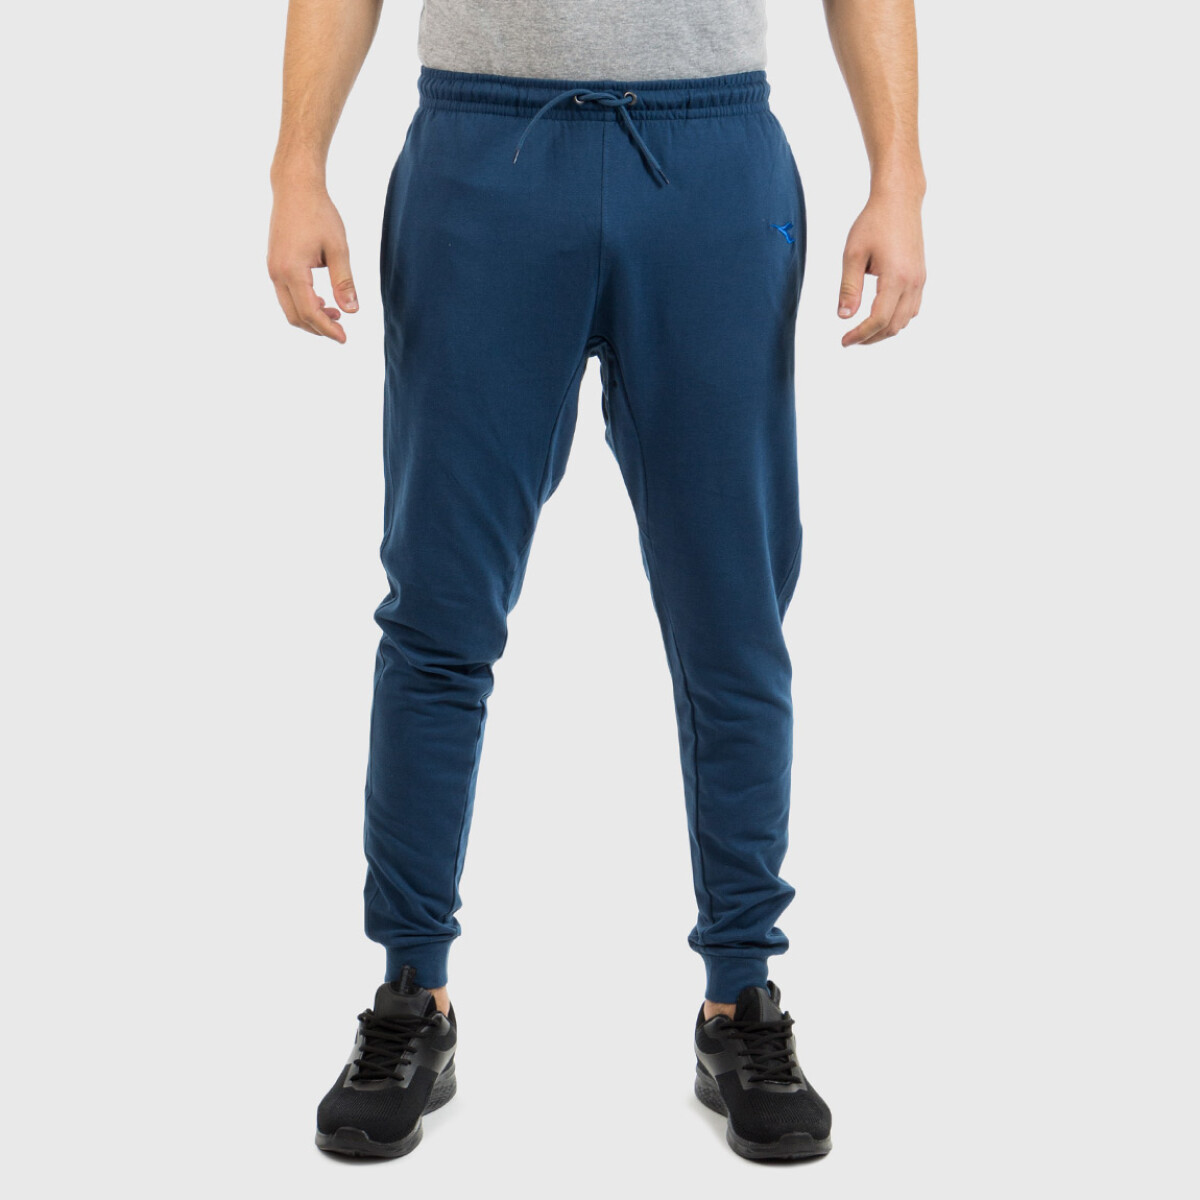 Diadora Hombre Sport Pantalon Terry-blue - Azul 